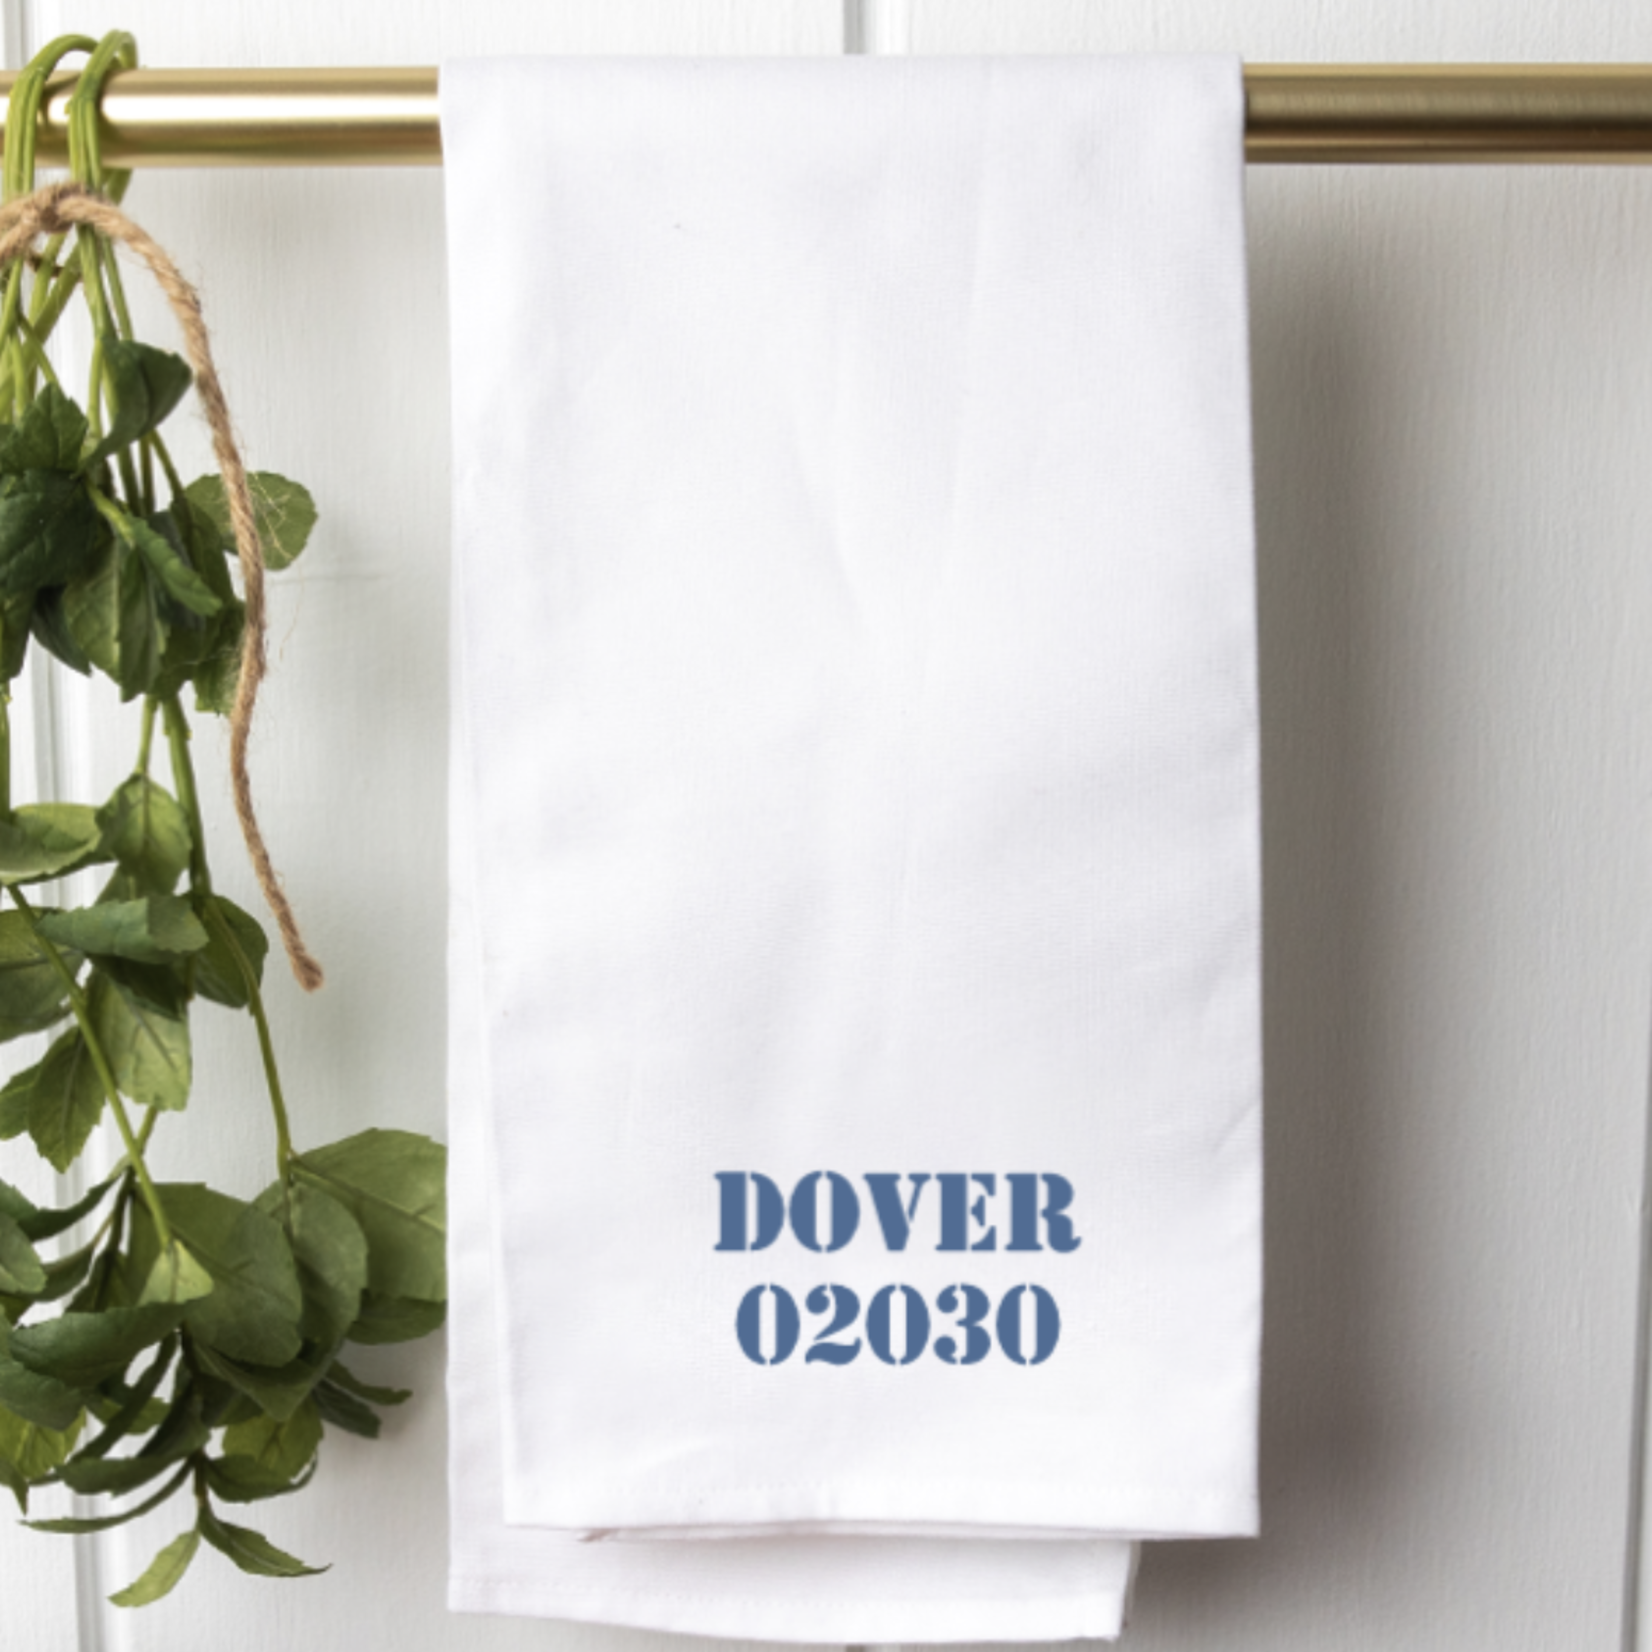 Rustic Marlin Rustic Marlin - Tea Towel - Dover 02030